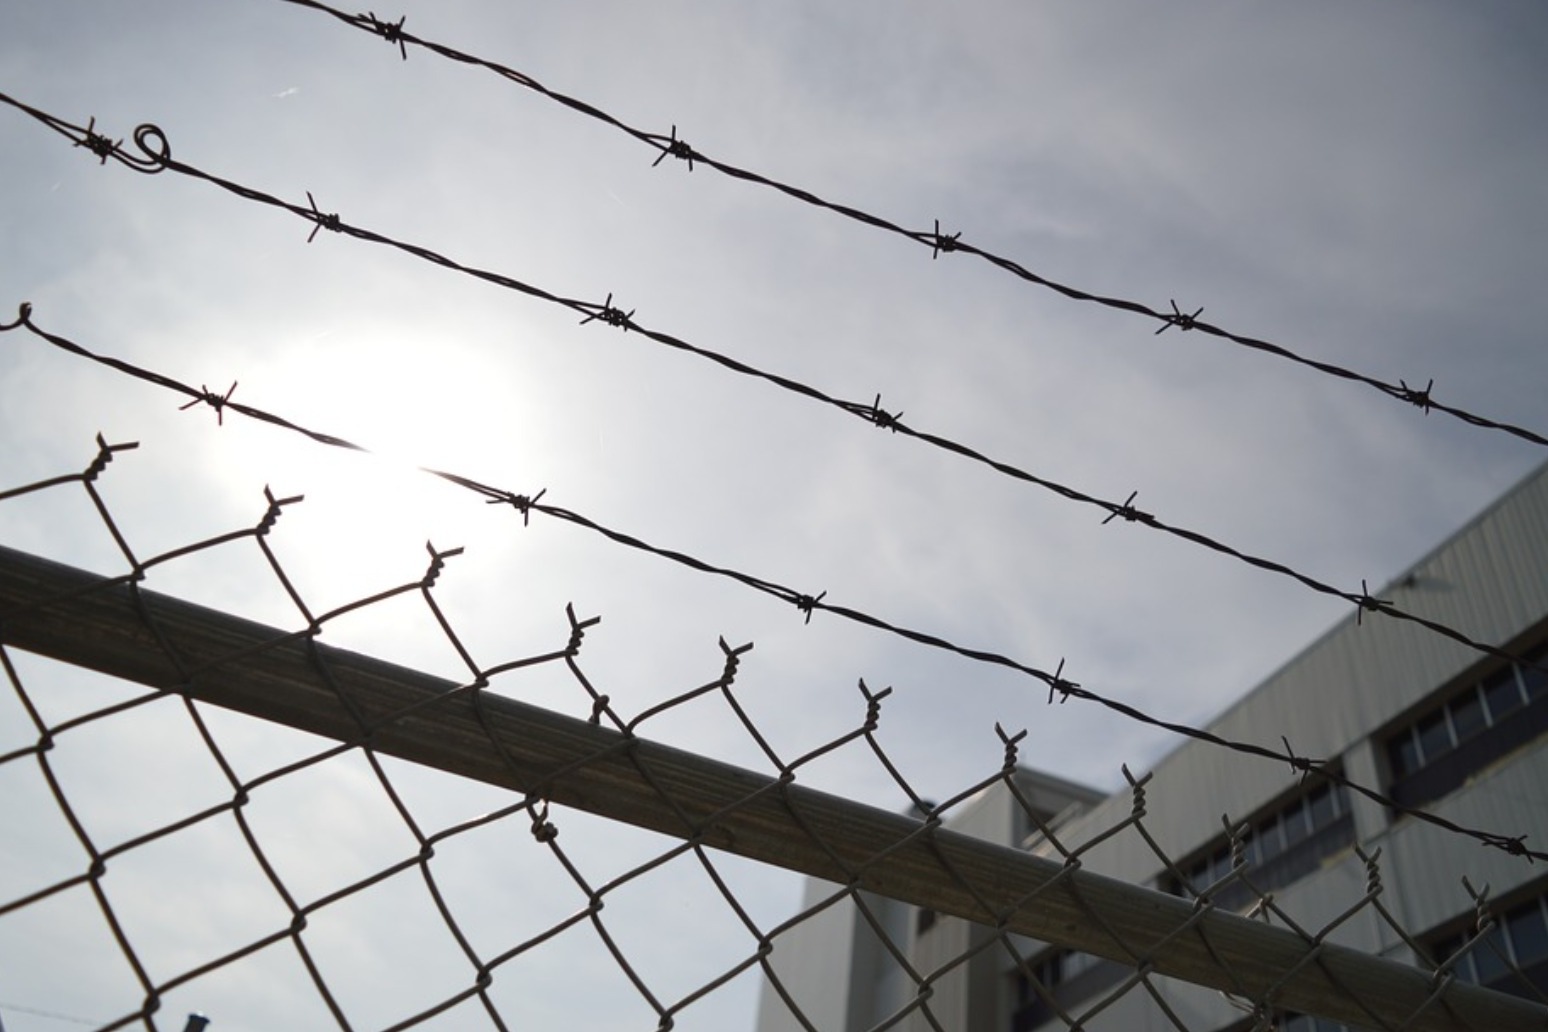 HUNDREDS OF PRISONERS LEAVING JAIL HOMELESS, REPORTS WARN 